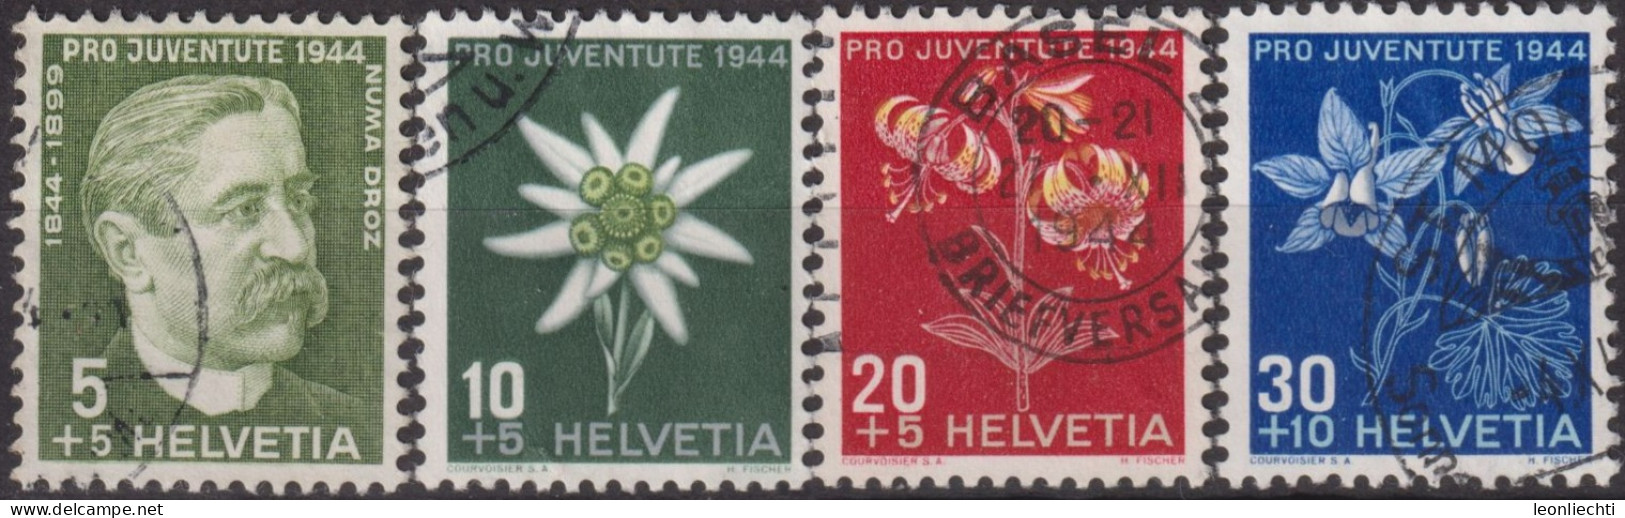 1944 Schweiz Pro Juventute ° Mi:CH 439-442, Yt:CH 399-402, Zum:CH J109-112, Numa Droz Und Alpenblumen - Gebraucht